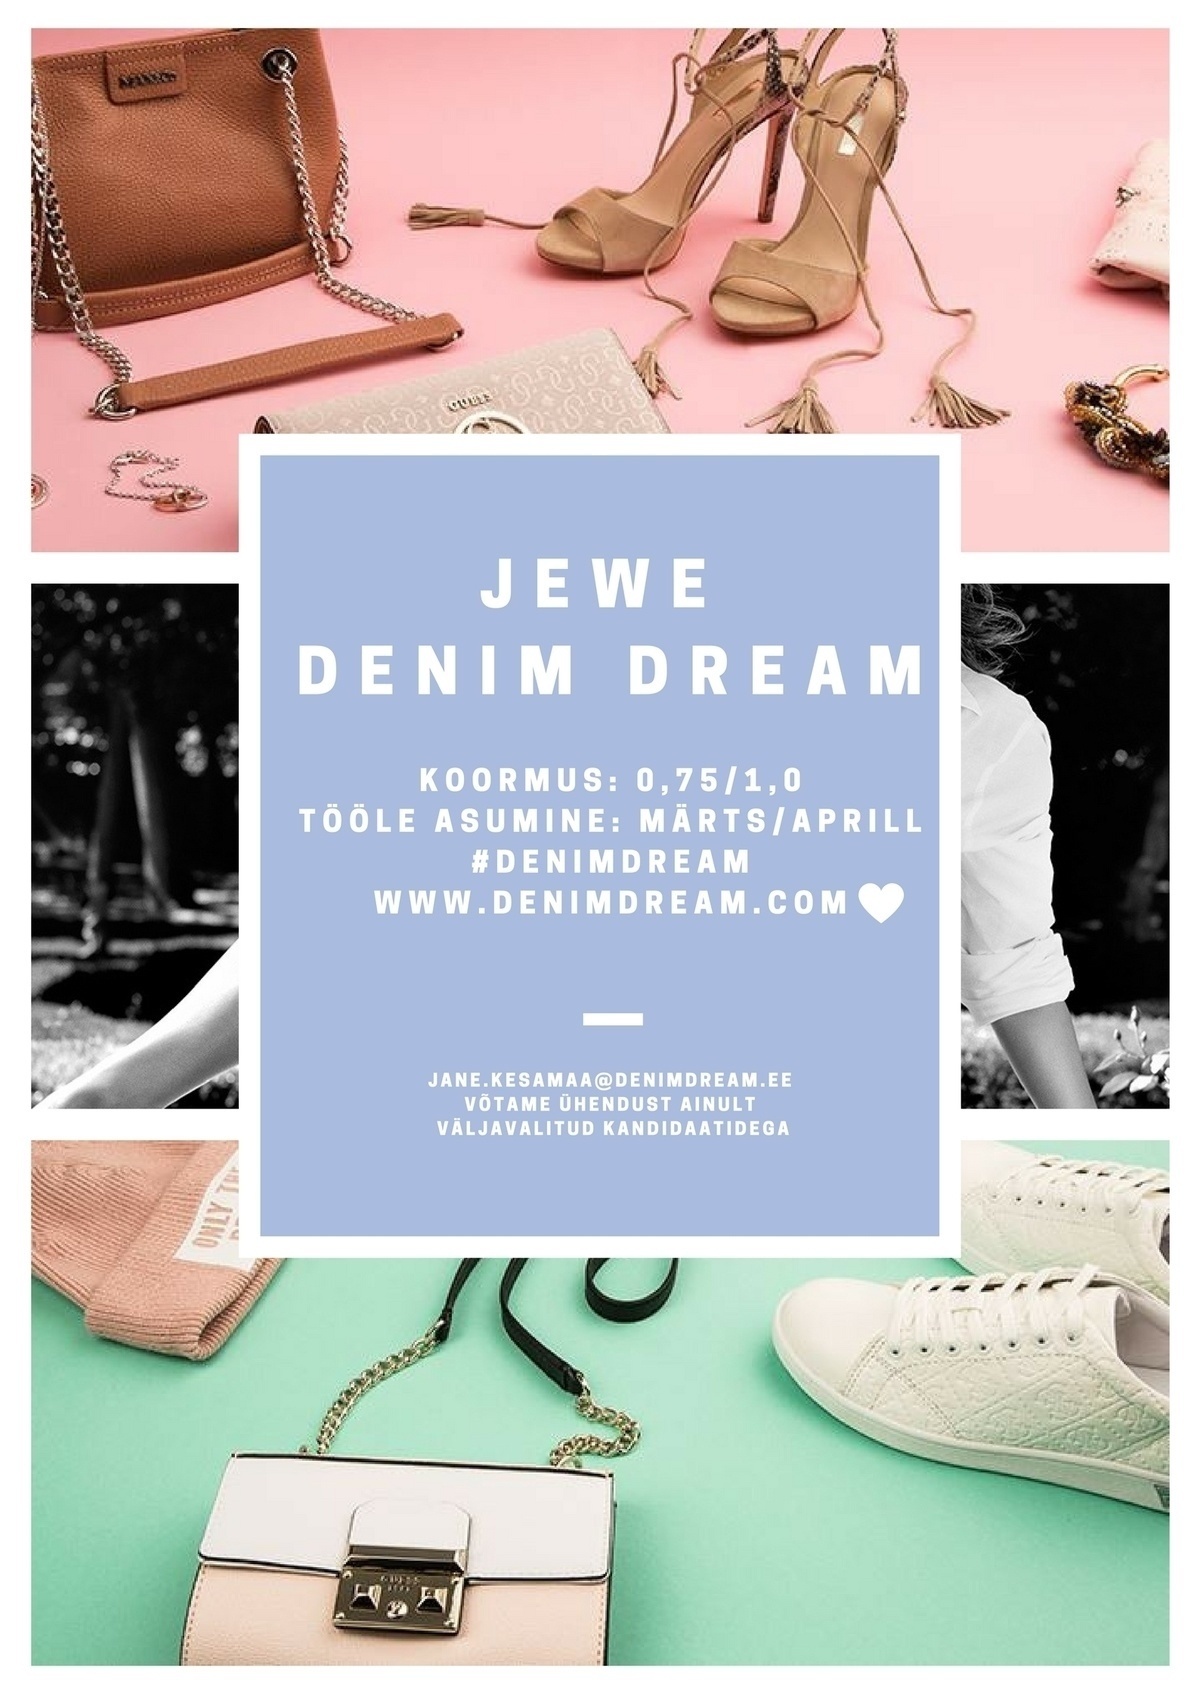 Põldma Kaubanduse AS Jewe Denim Dream ootab uut müügikonsultanti!